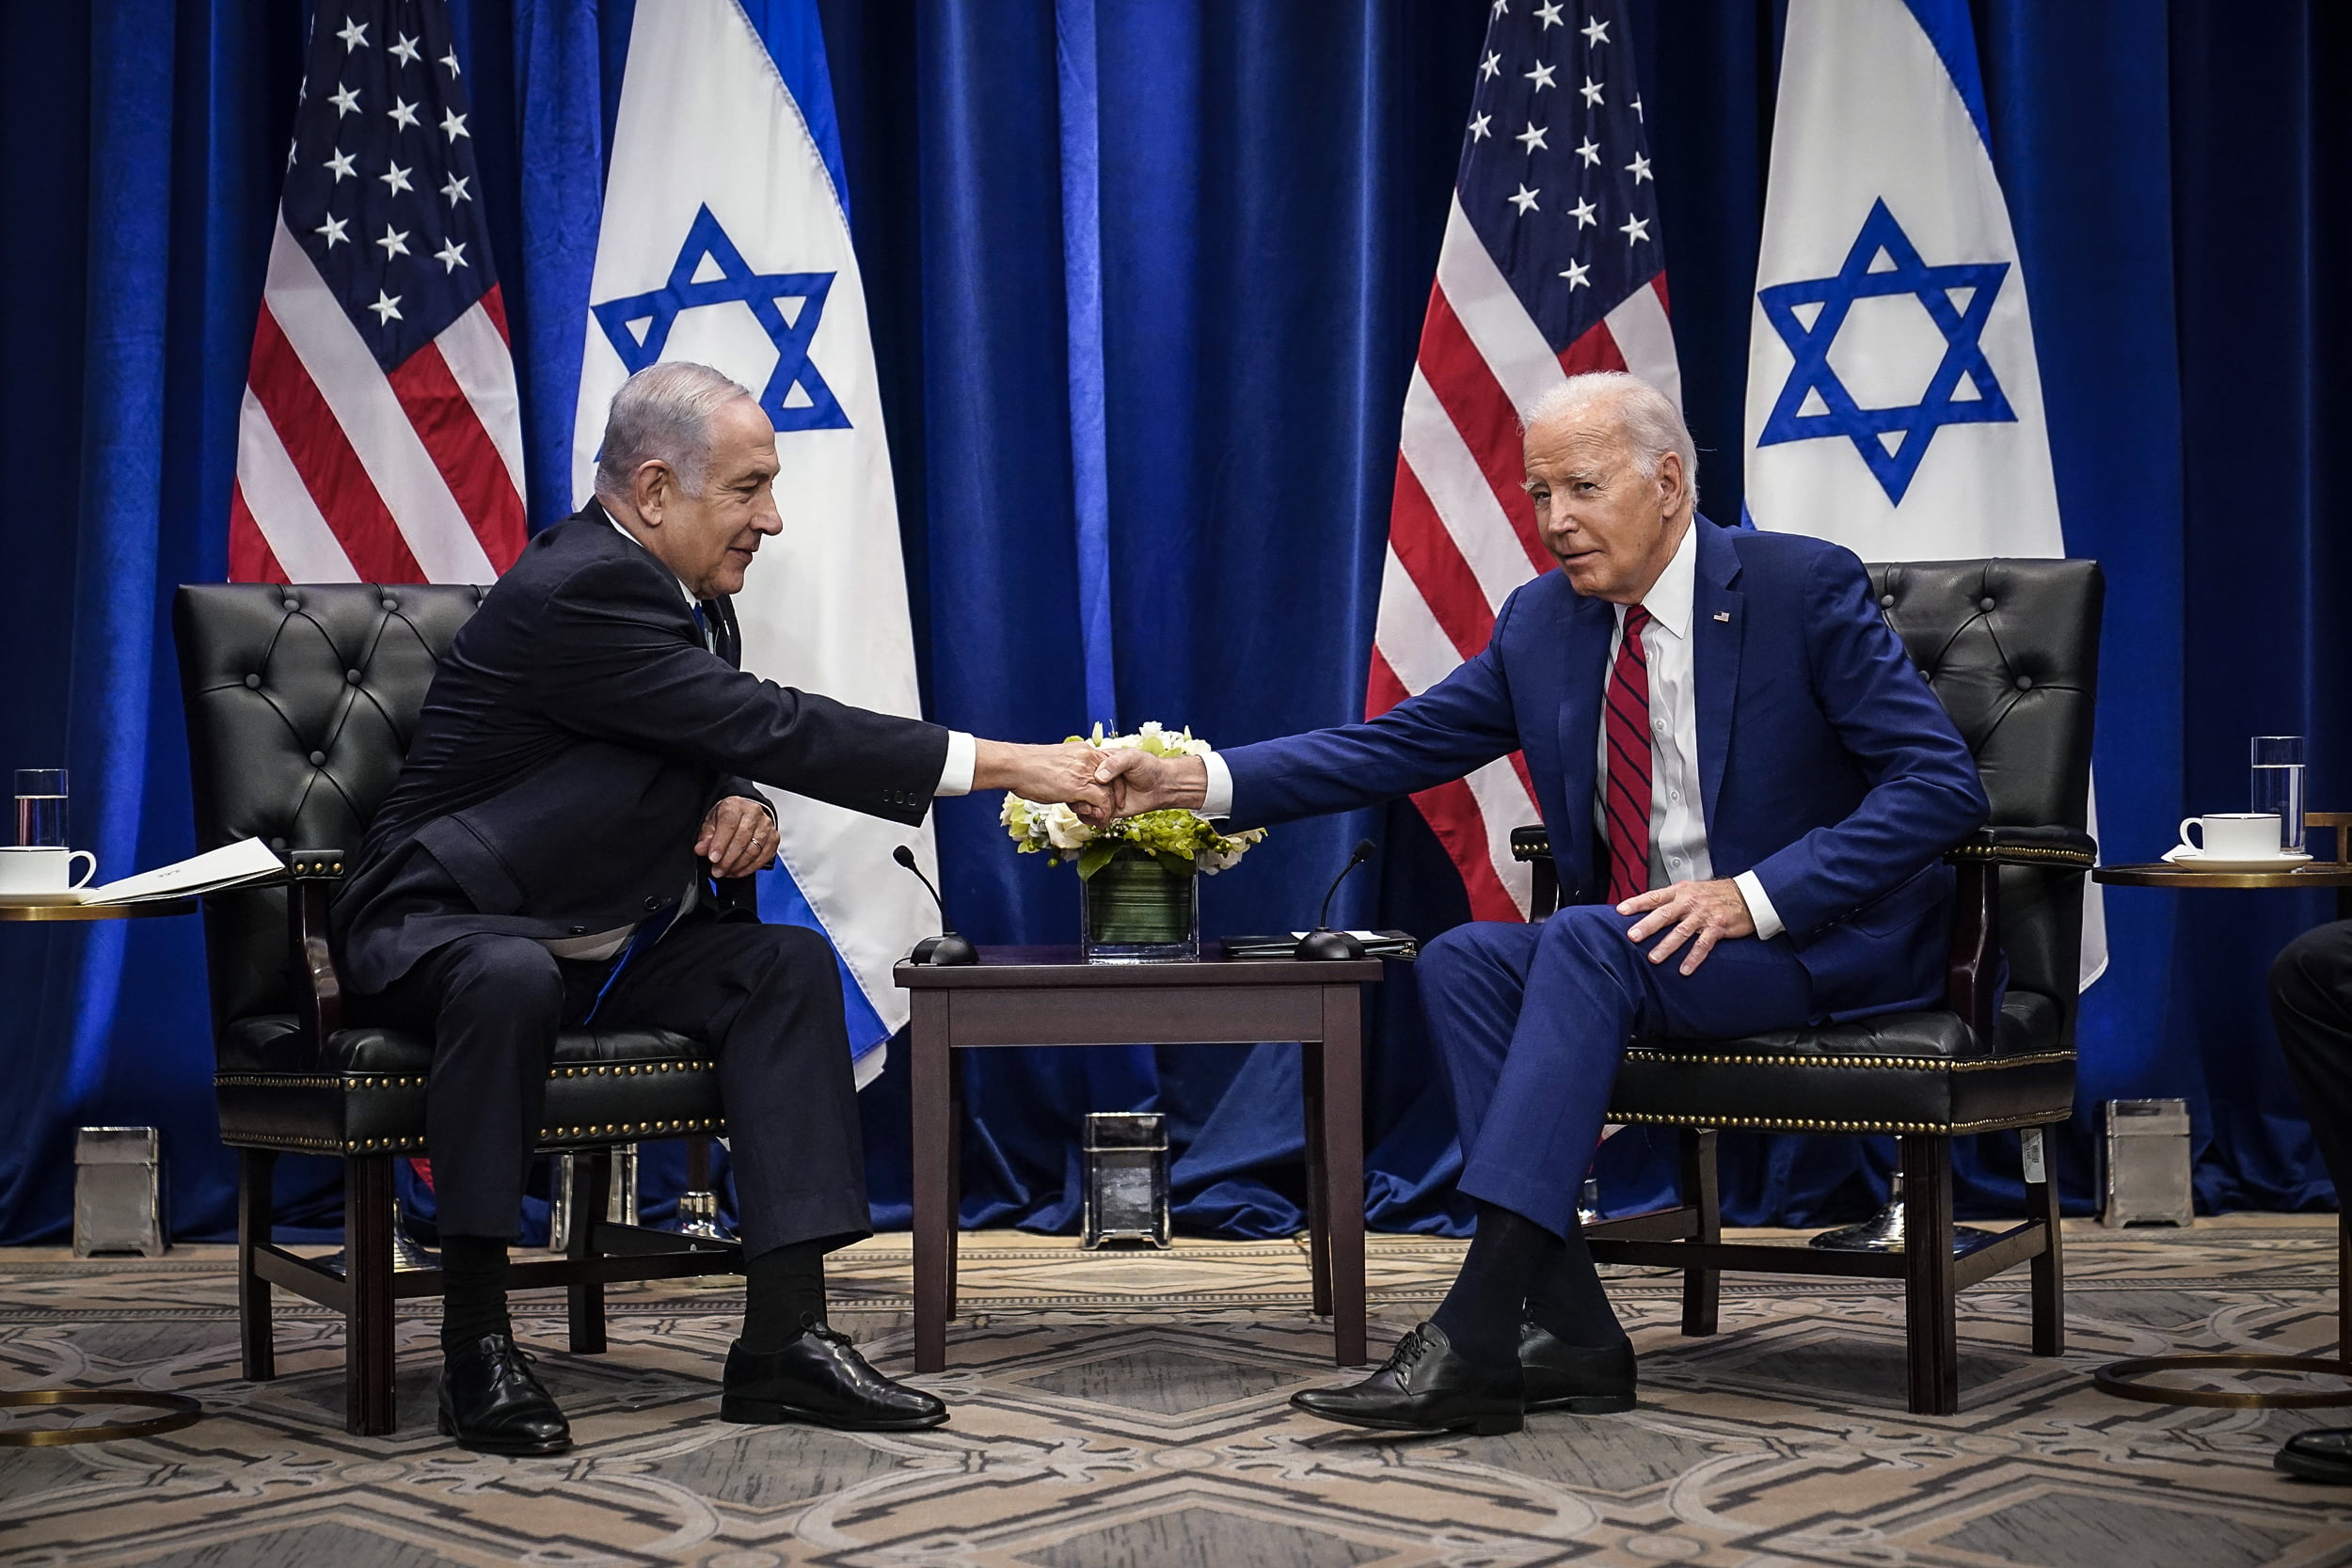 İsrail Başbakanı Binyamin Netanyahu,ABD'nin İsrail’e “gerekli mühimmatları göndermeye devam ettiğini” açıkladı.